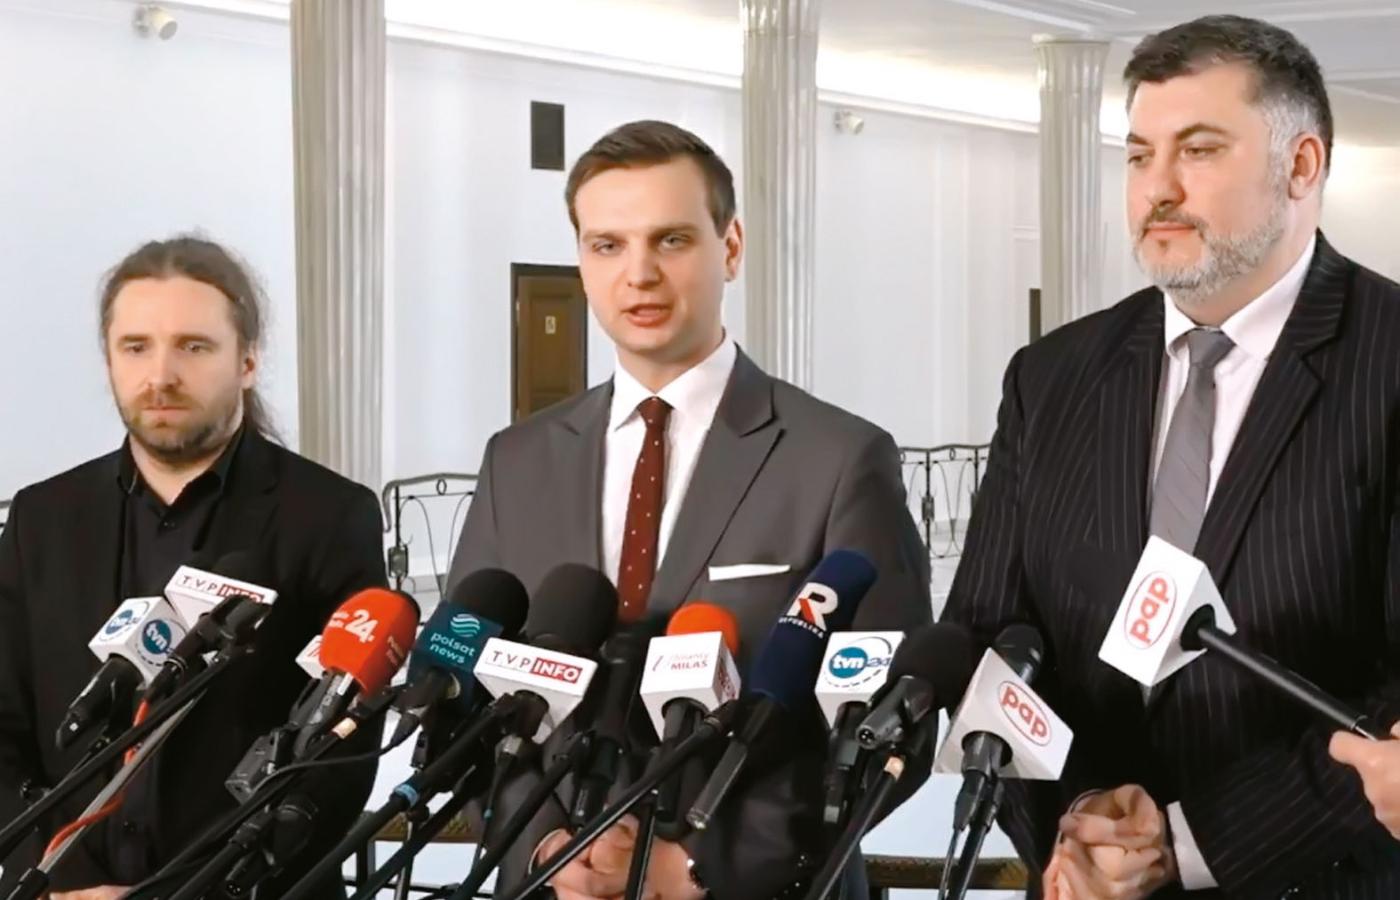 Dobromir Sośnierz, Jakub Kulesza i Artur Dziambor zapowiedzieli odejście z partii KORWiN.